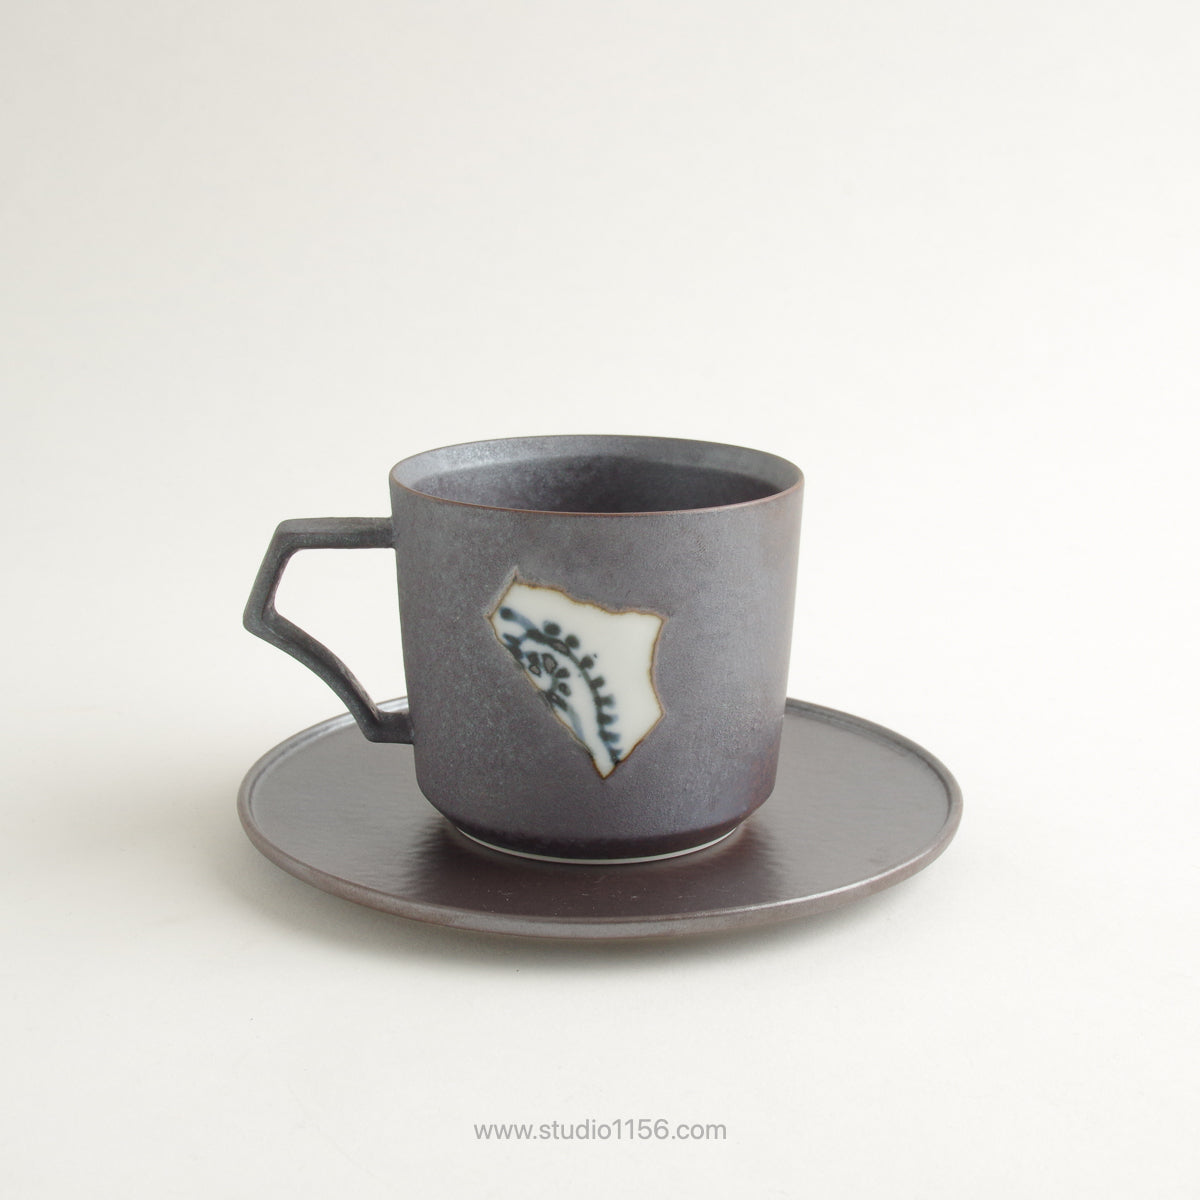 有田焼 [強化磁器] frameコーヒーカップ 200ml AHJ 埋込陶片 ARITA HASAMI JAPAN Studio1156